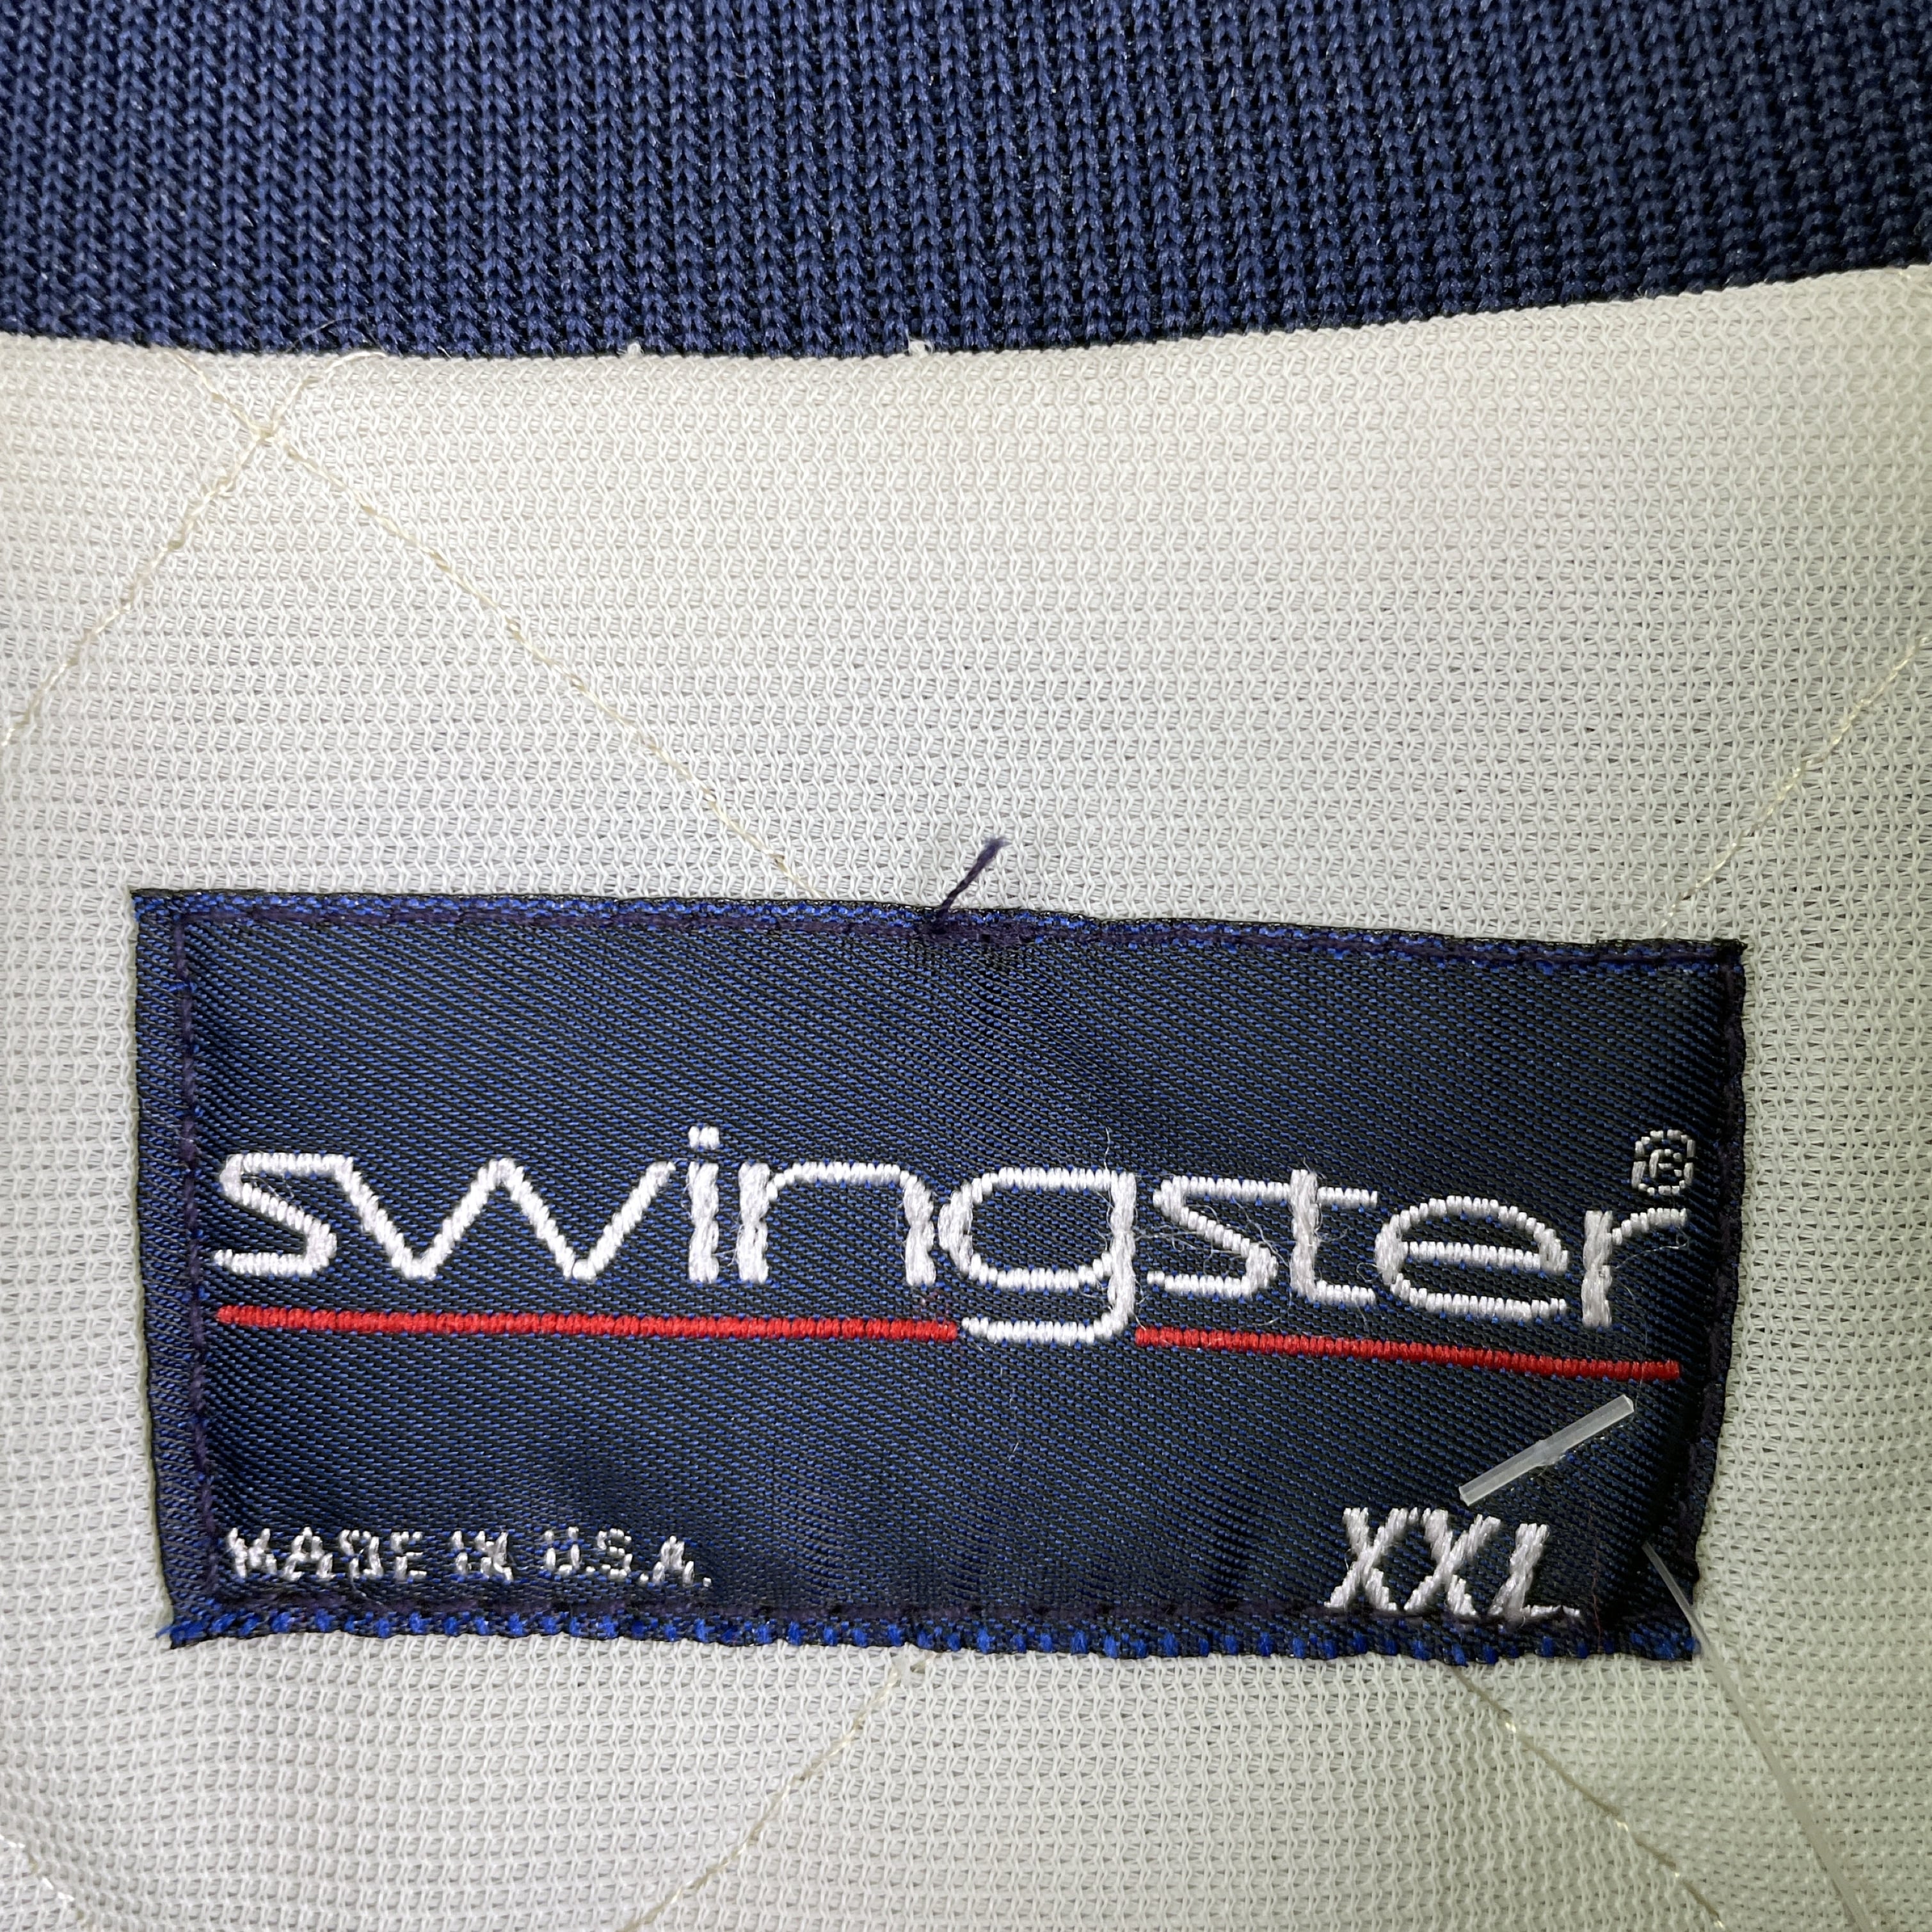 GOOD YEAR Swingster 90's ナイロンジャケット